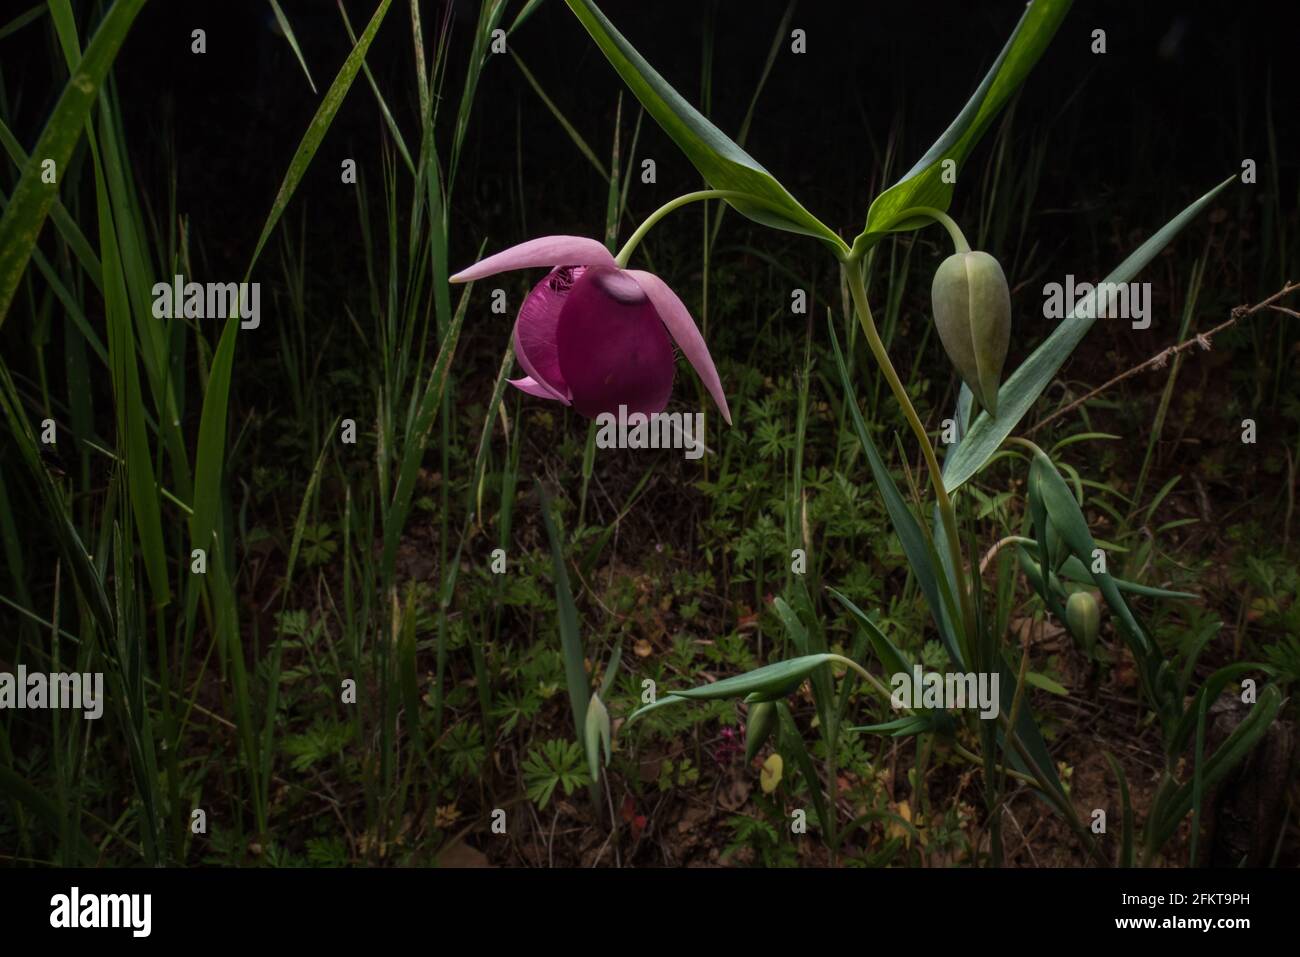 La lanterne de fée pourpre ou le globélily pourpre (Calochortus amoenus) est une fleur rare endémique aux contreforts de la sierra en Californie. Banque D'Images